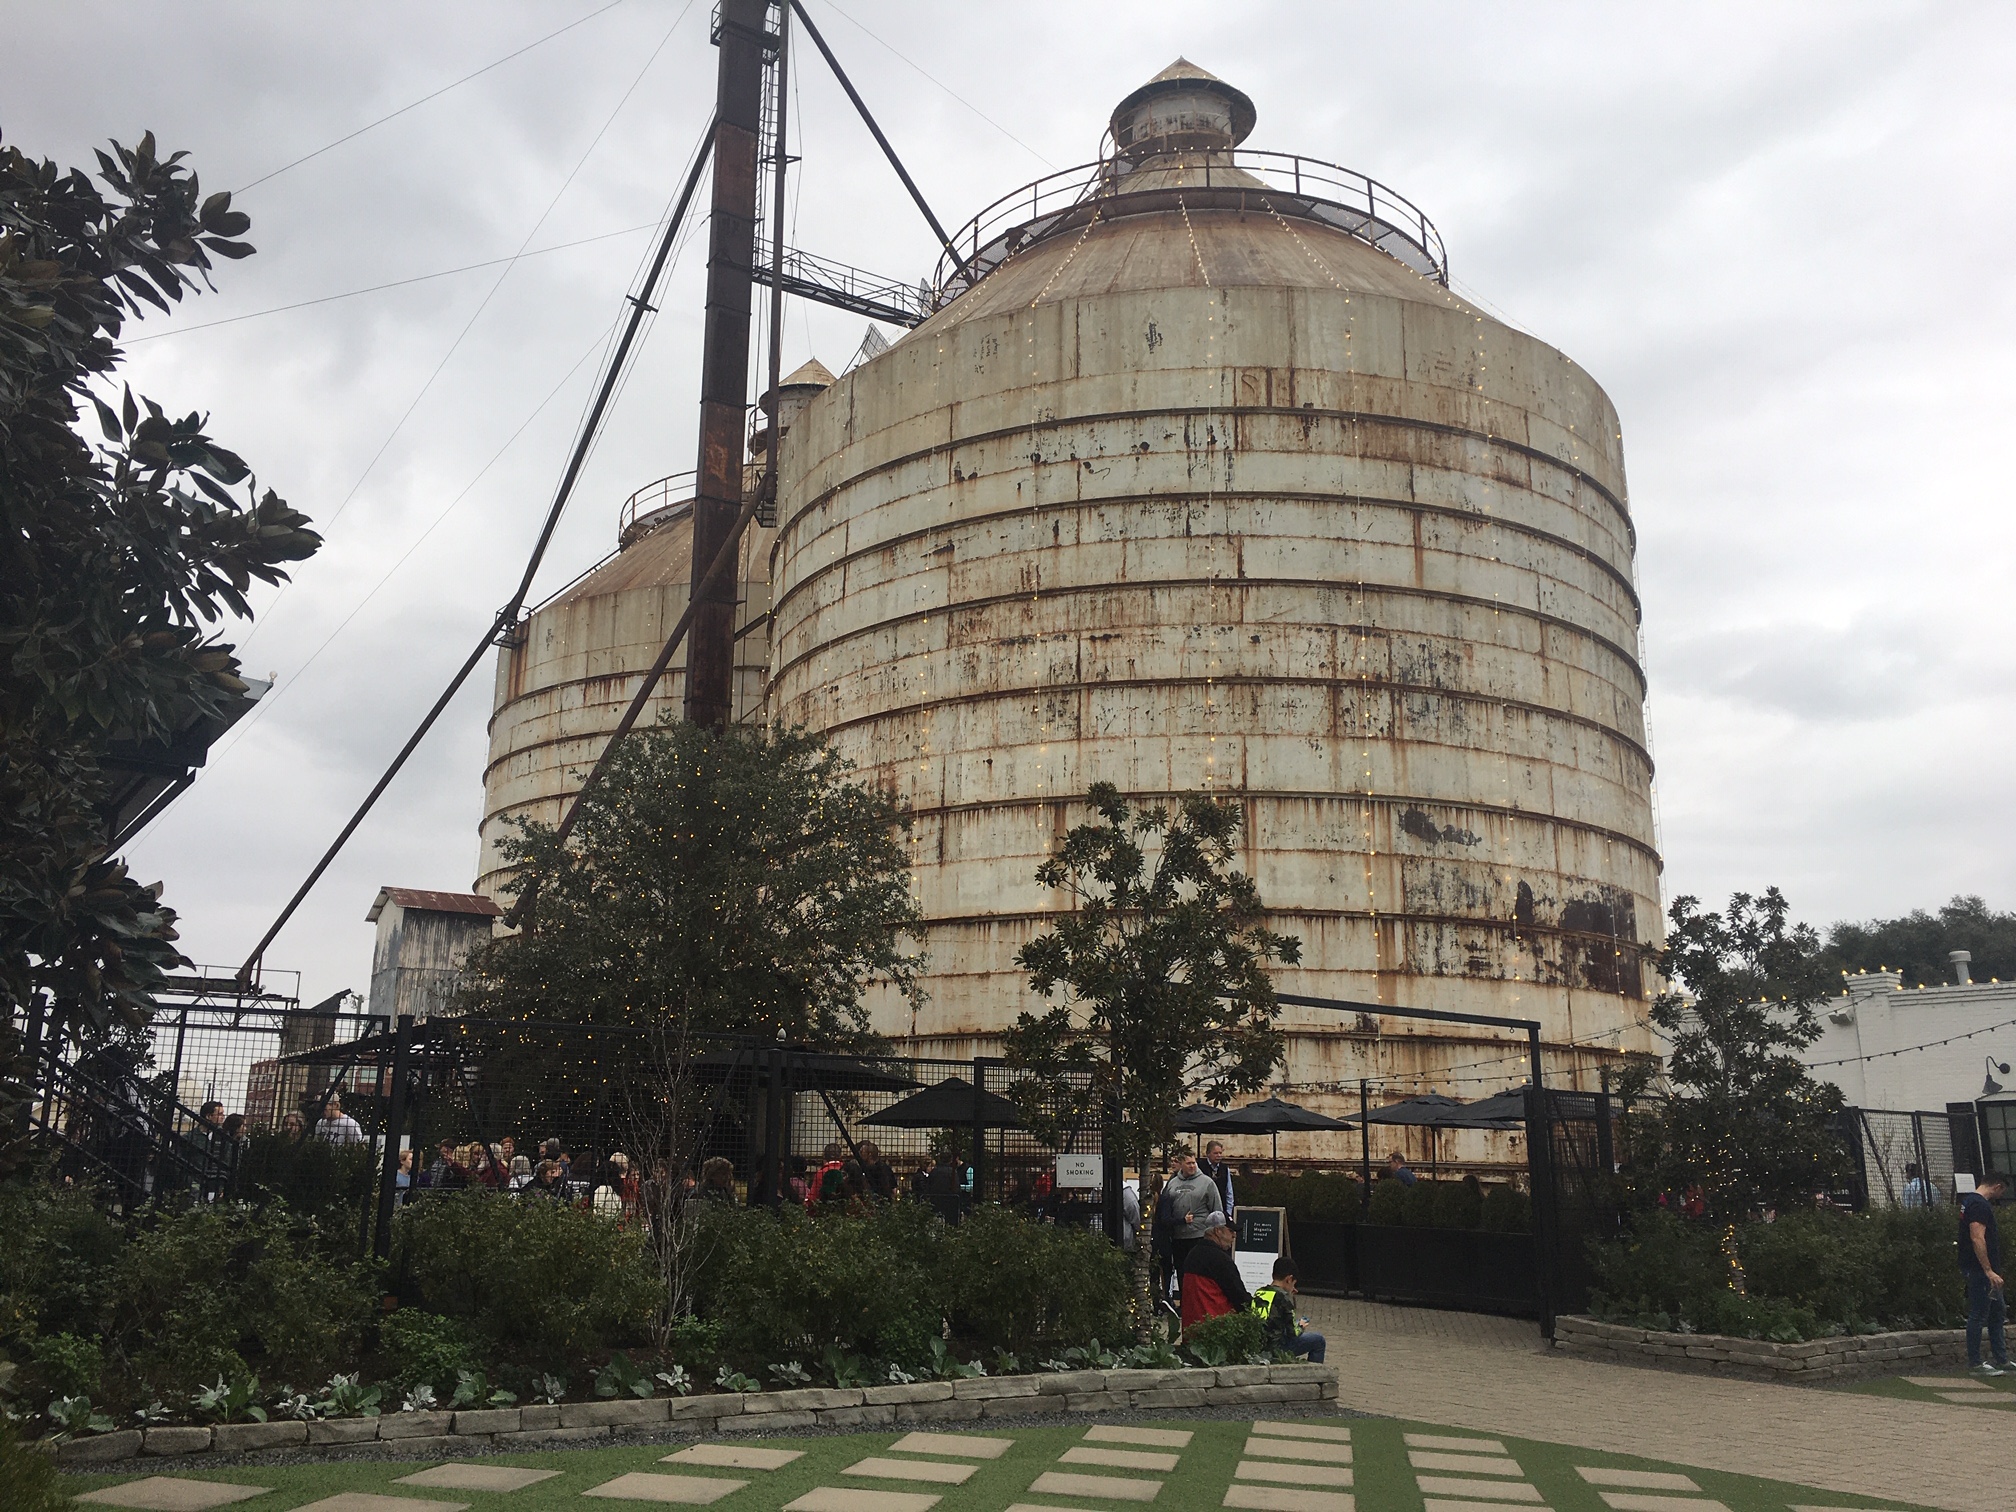 silos at Magnolia Market Waco